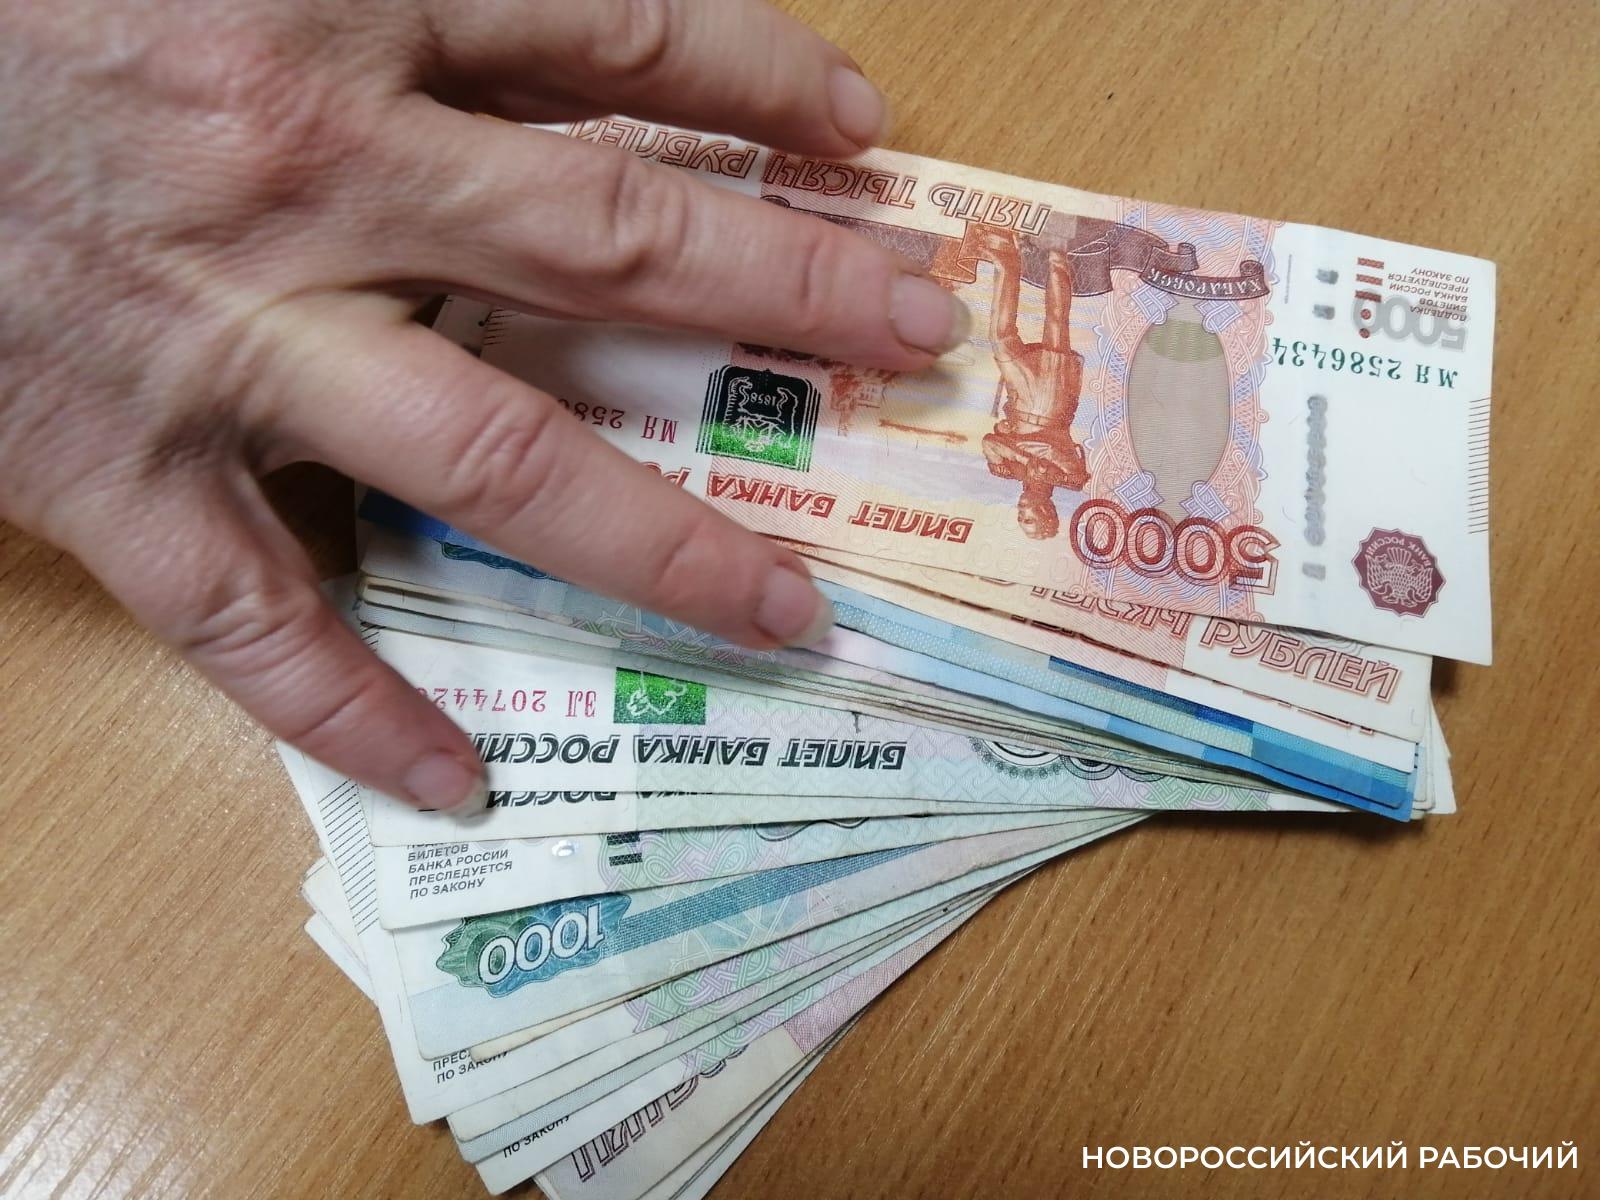 В Новороссийске банковский служащий отдал мошенником деньги своего банка и ждал прибыль в биткоинах